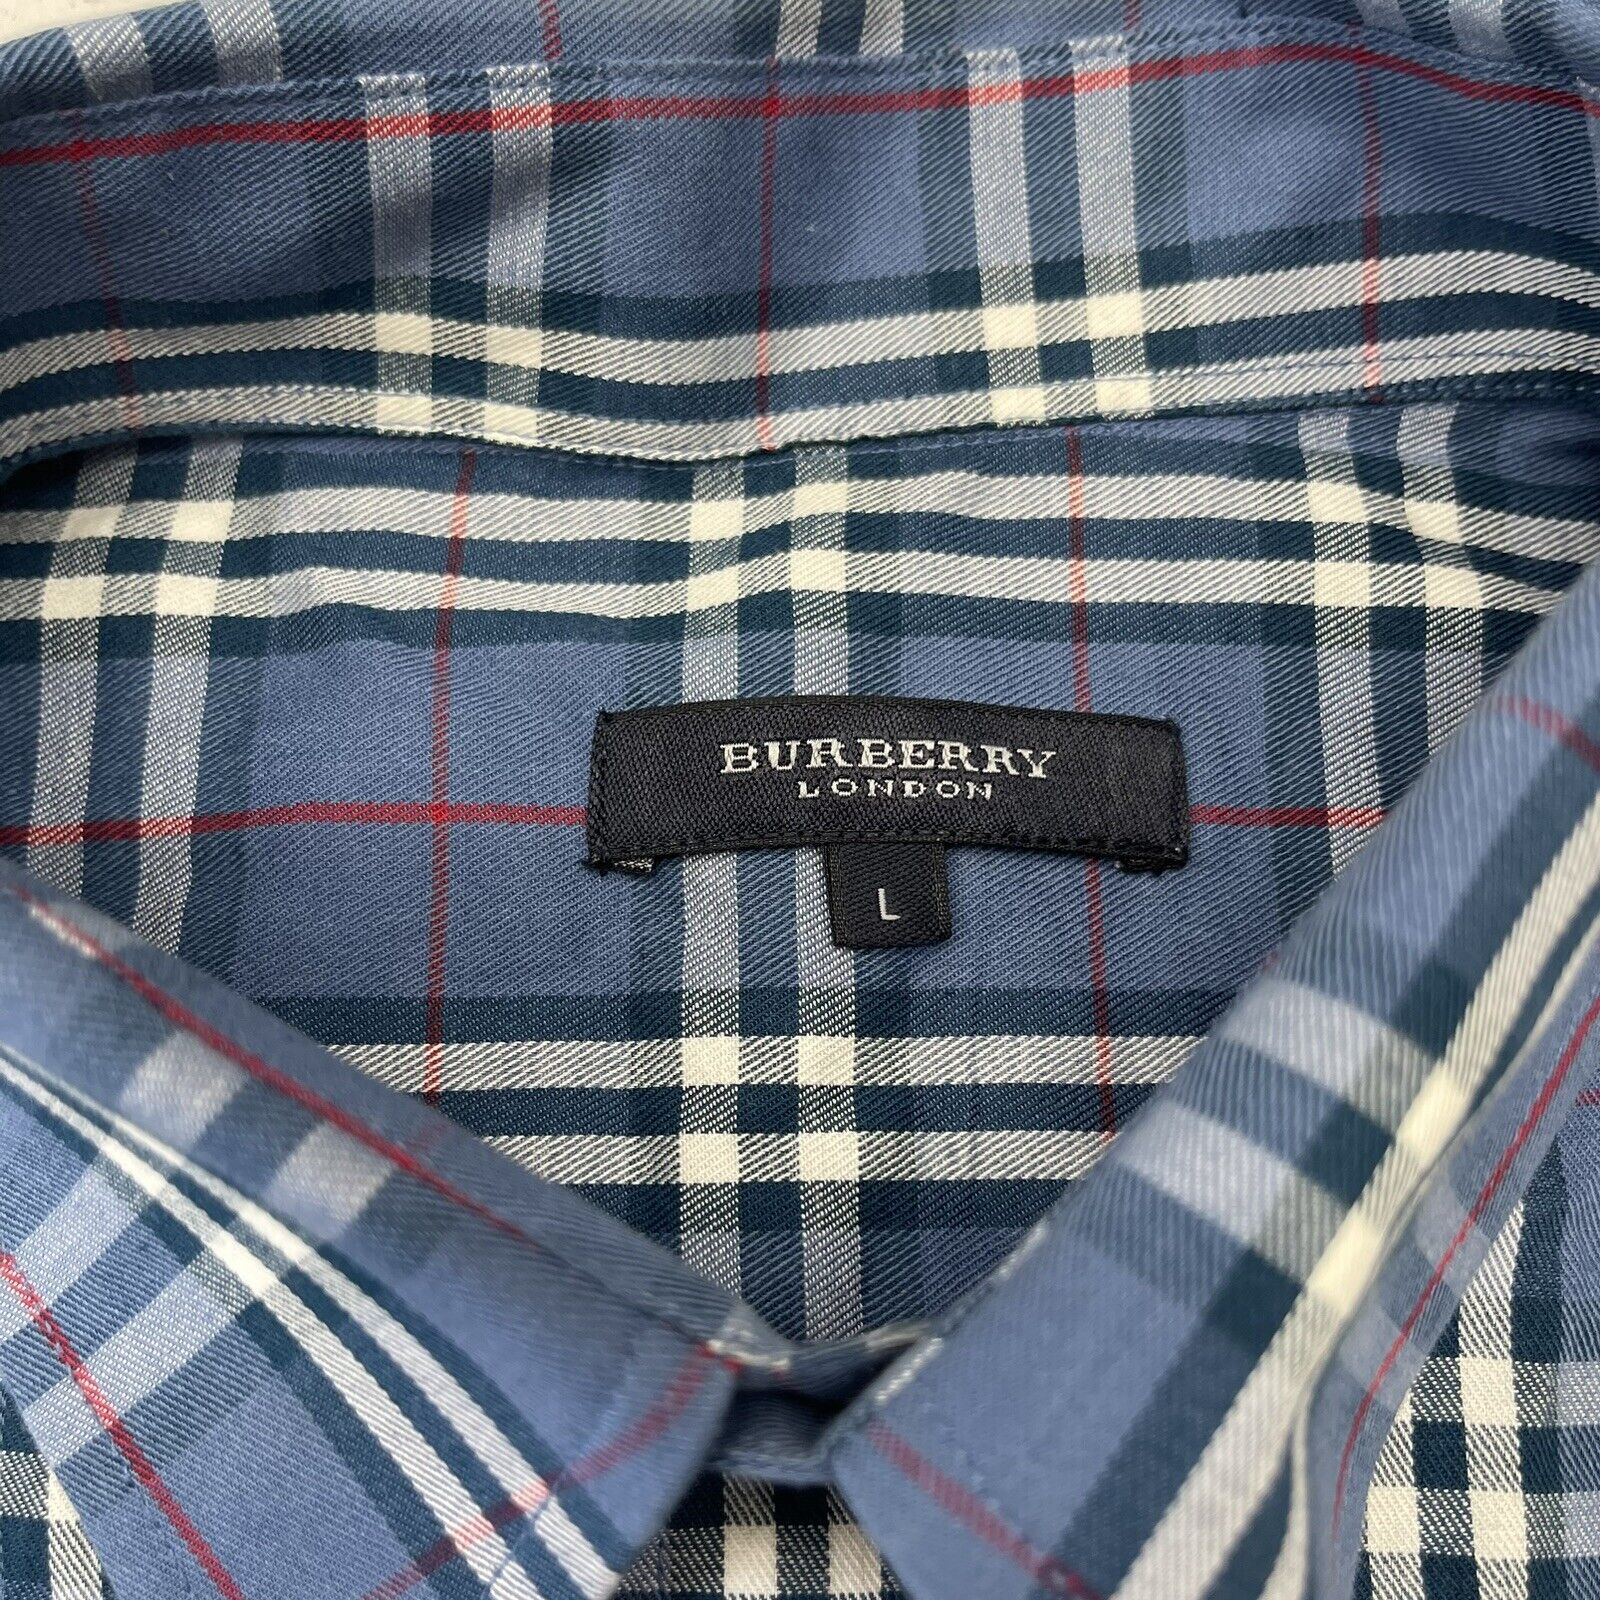 Burberry London Cotton Blue Plaid Short Sleeve Button Down Mens Size L -  beyond exchange